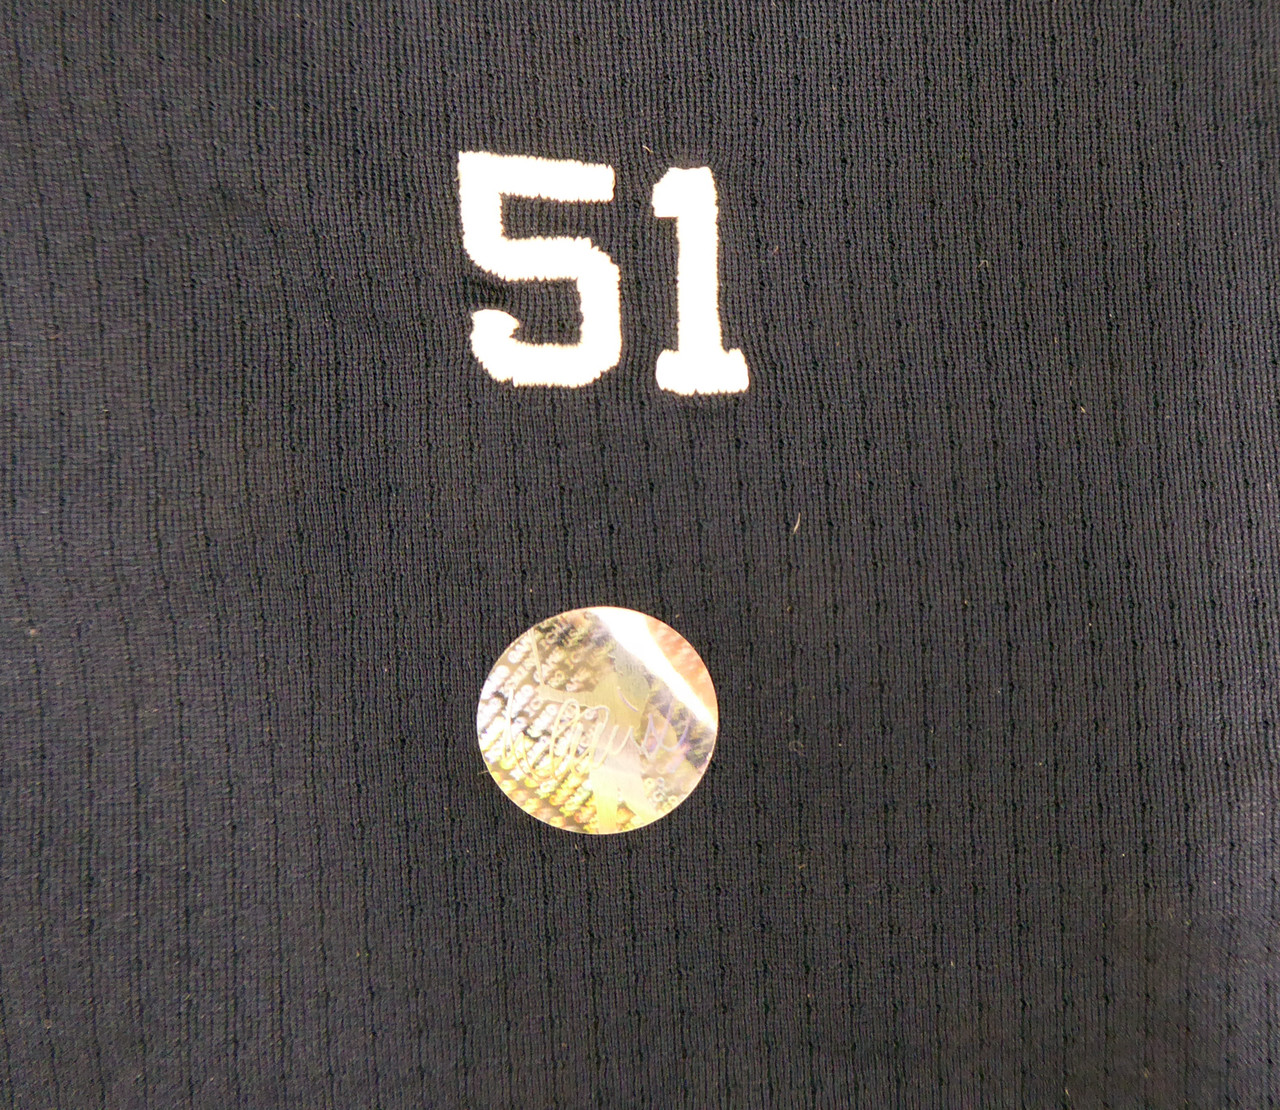 Ichiro Suzuki #51 Seattle Mariners Navy T-Shirt